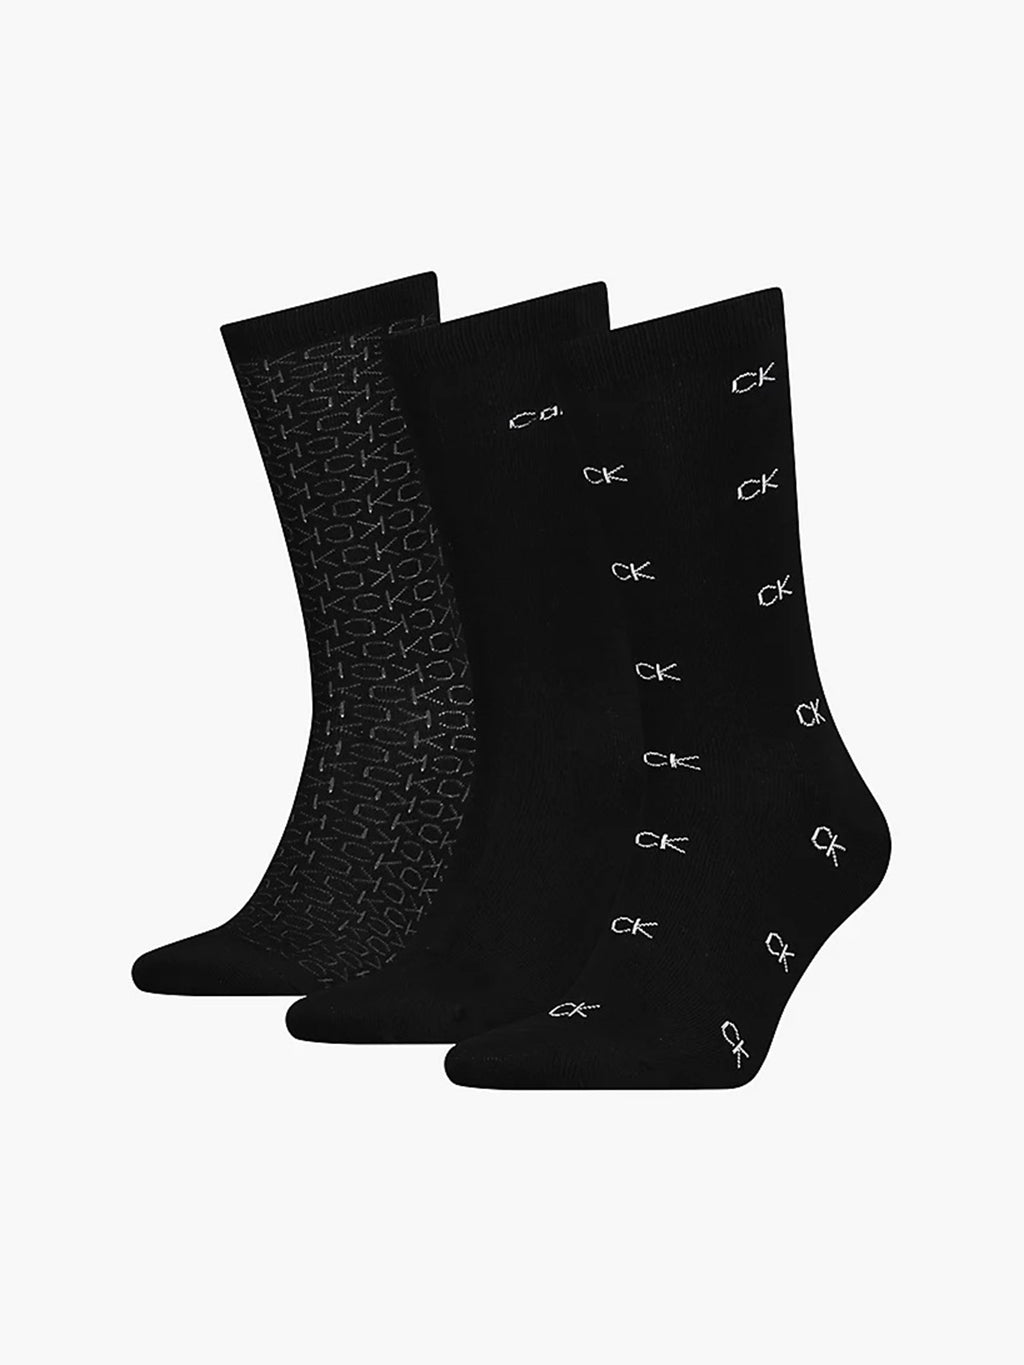 ck-socks-black-3-pack-701219835